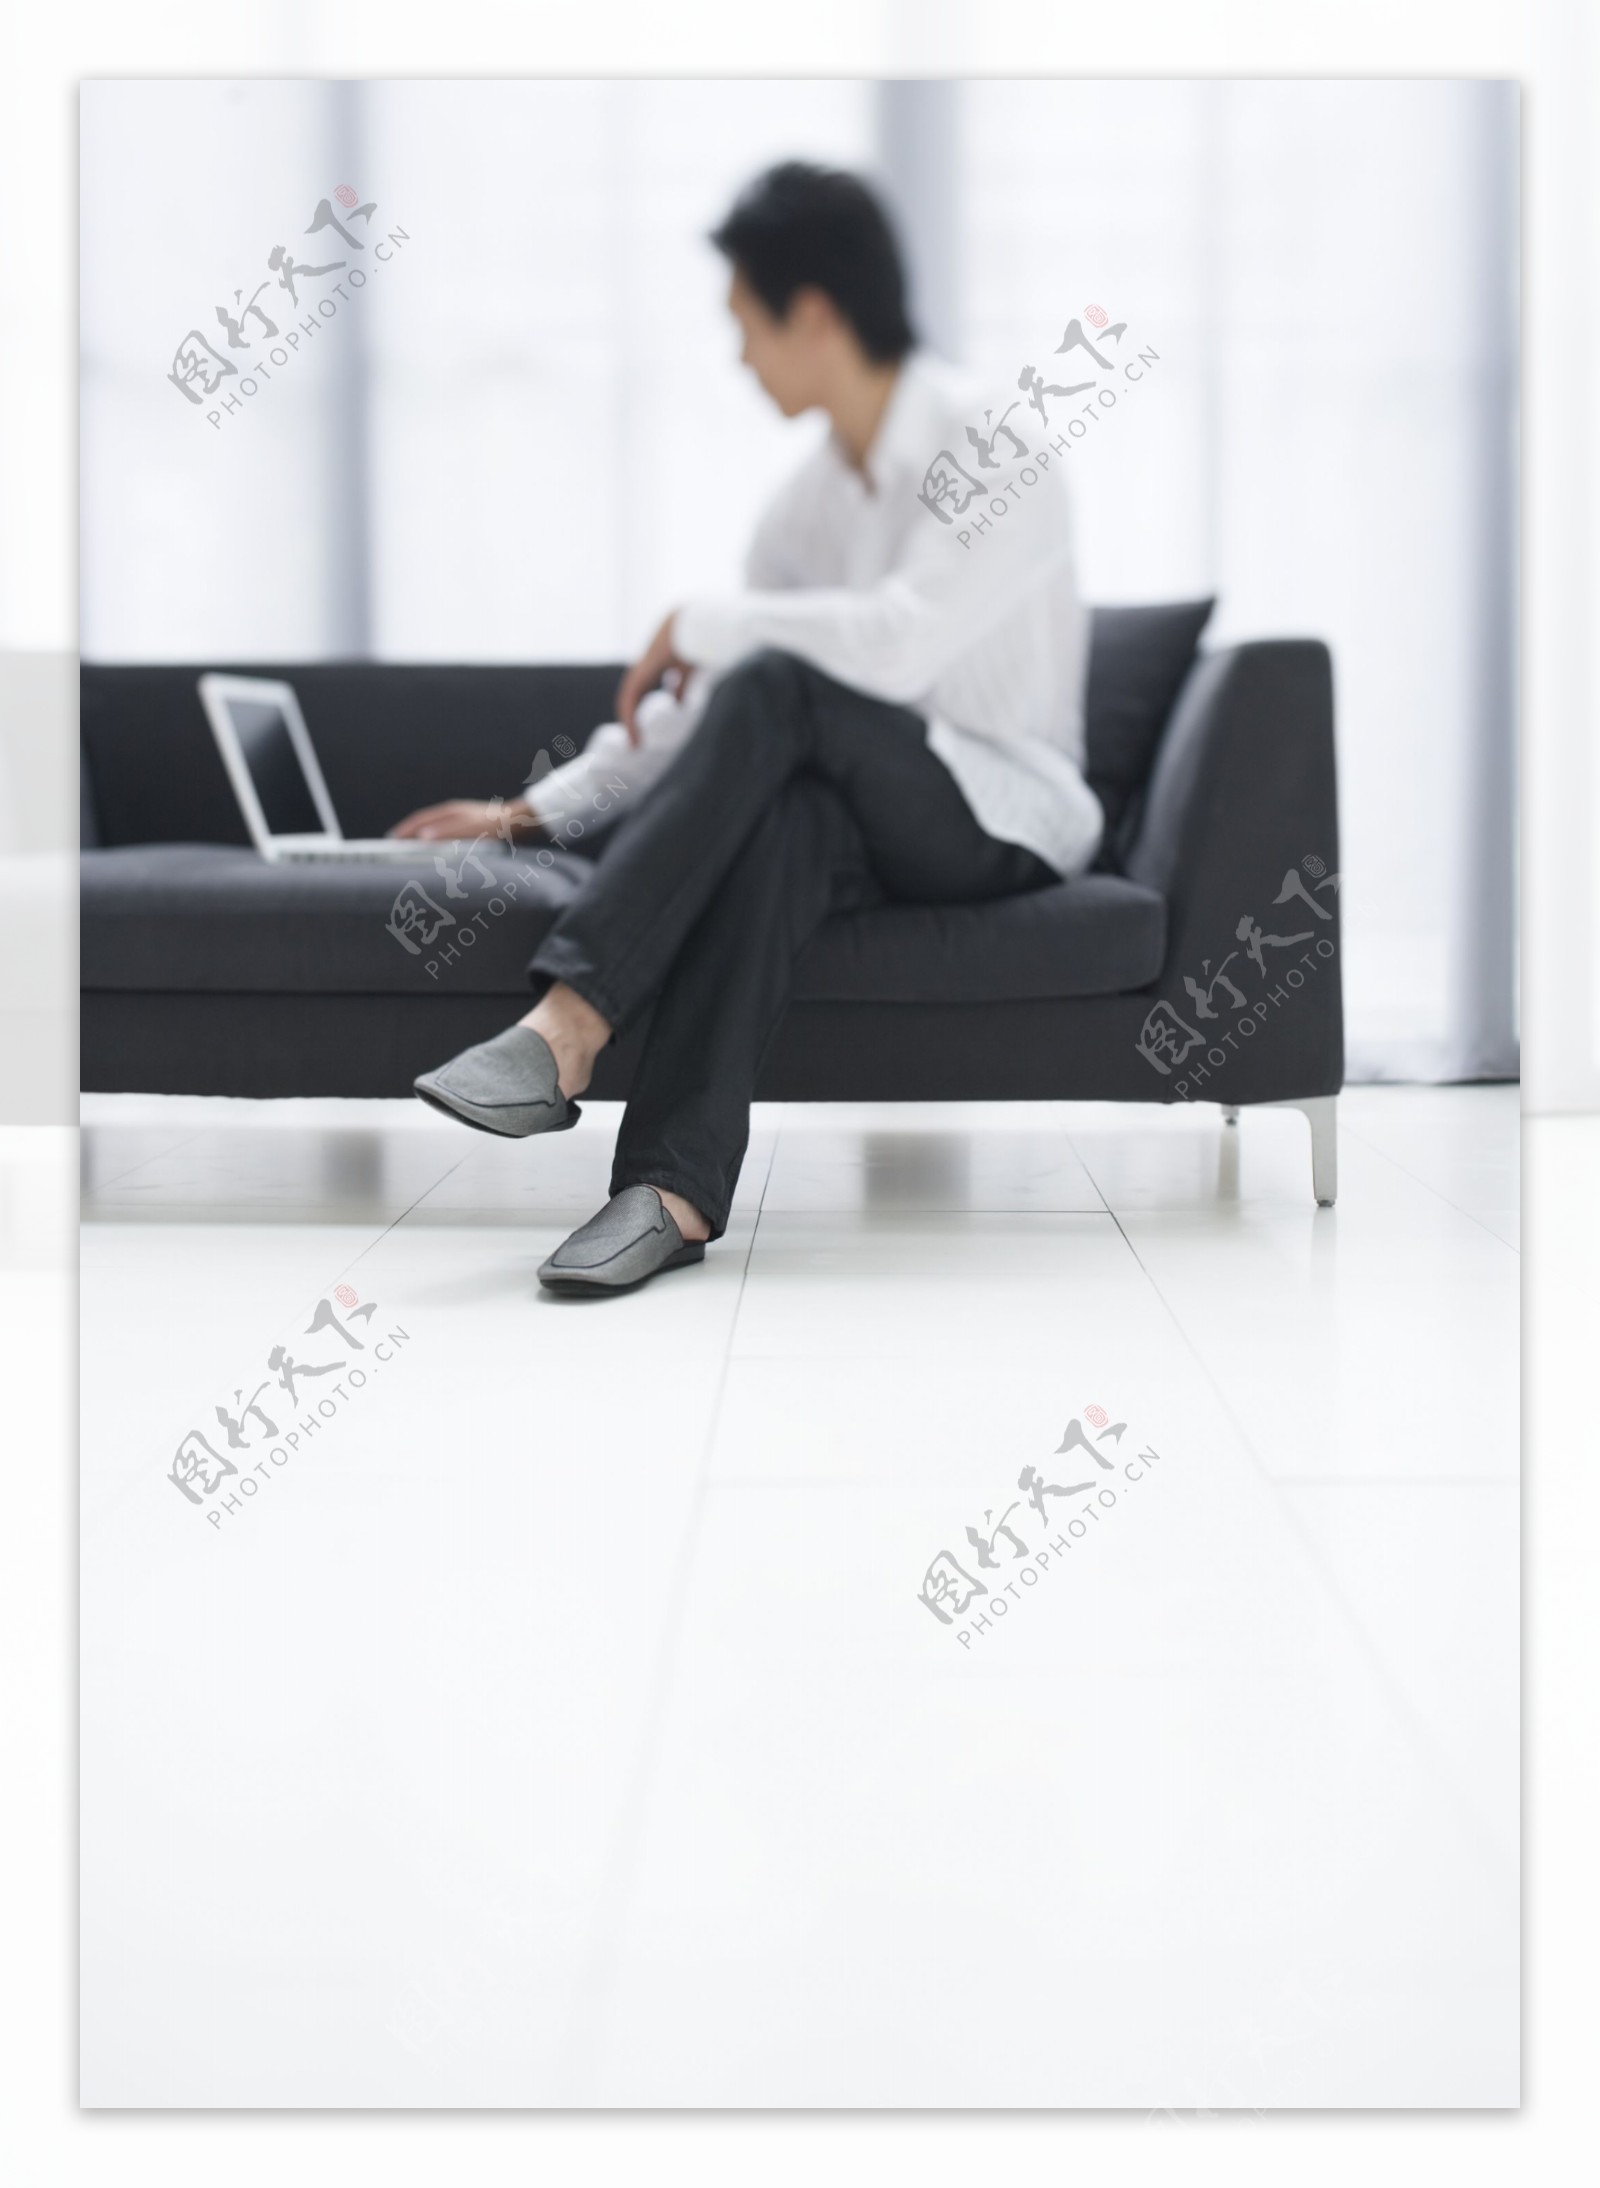 坐在沙发上玩电脑的男人